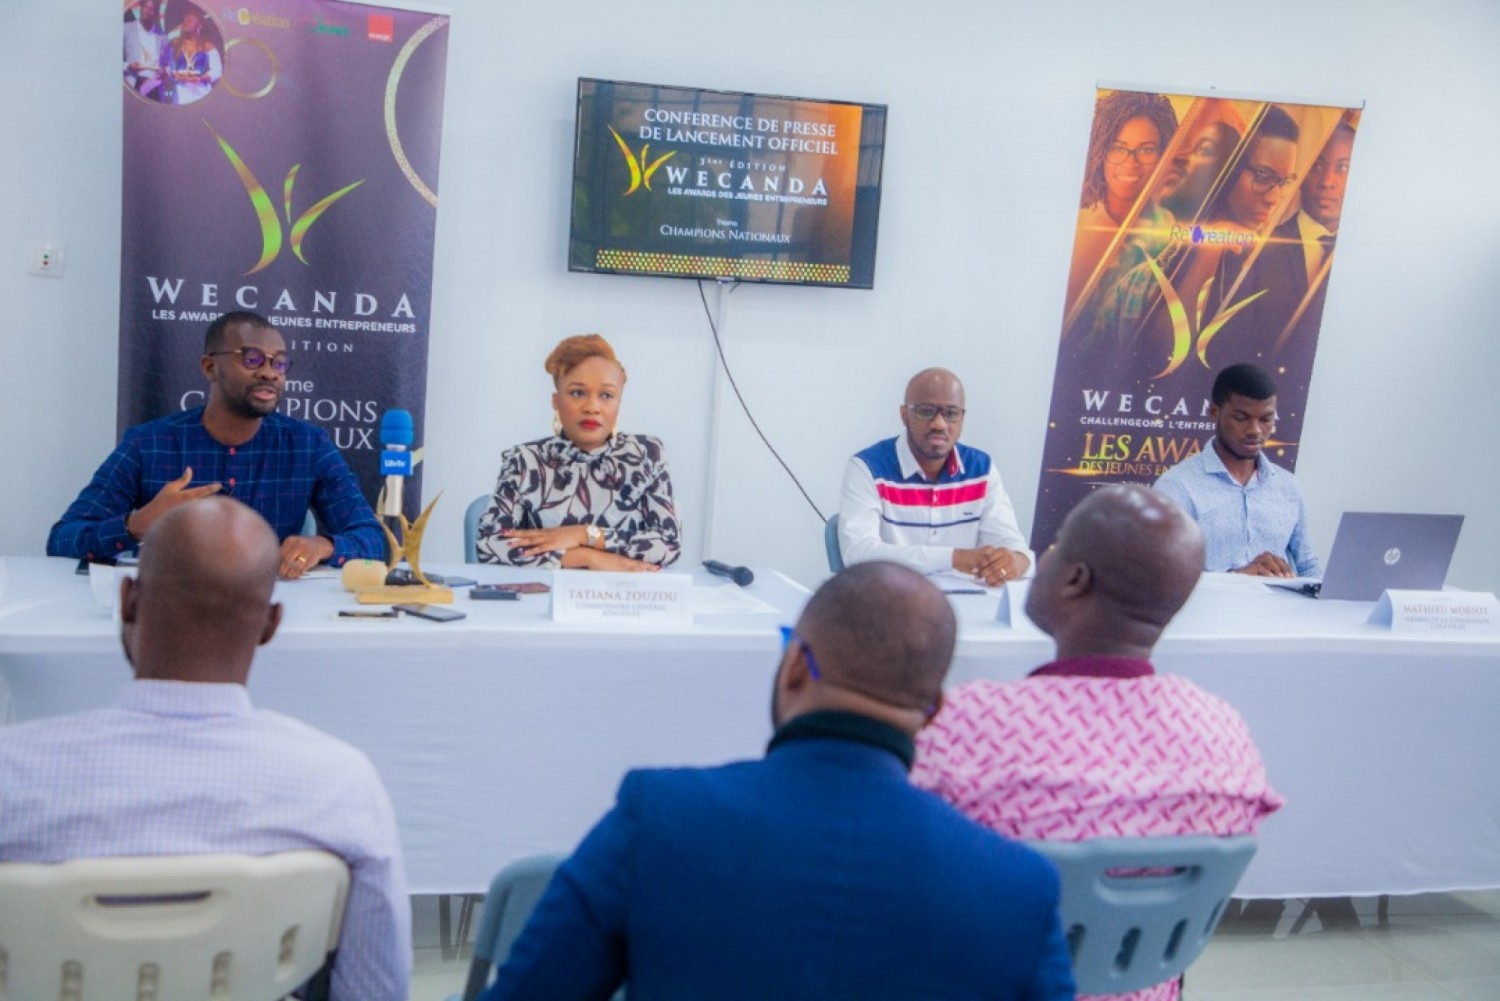 Côte d'Ivoire : Wecanda, les Awards des jeunes entrepreneurs lancés, la 3e édition placée sous le thème de la promotion des champions nationaux, avec des innovations majeures